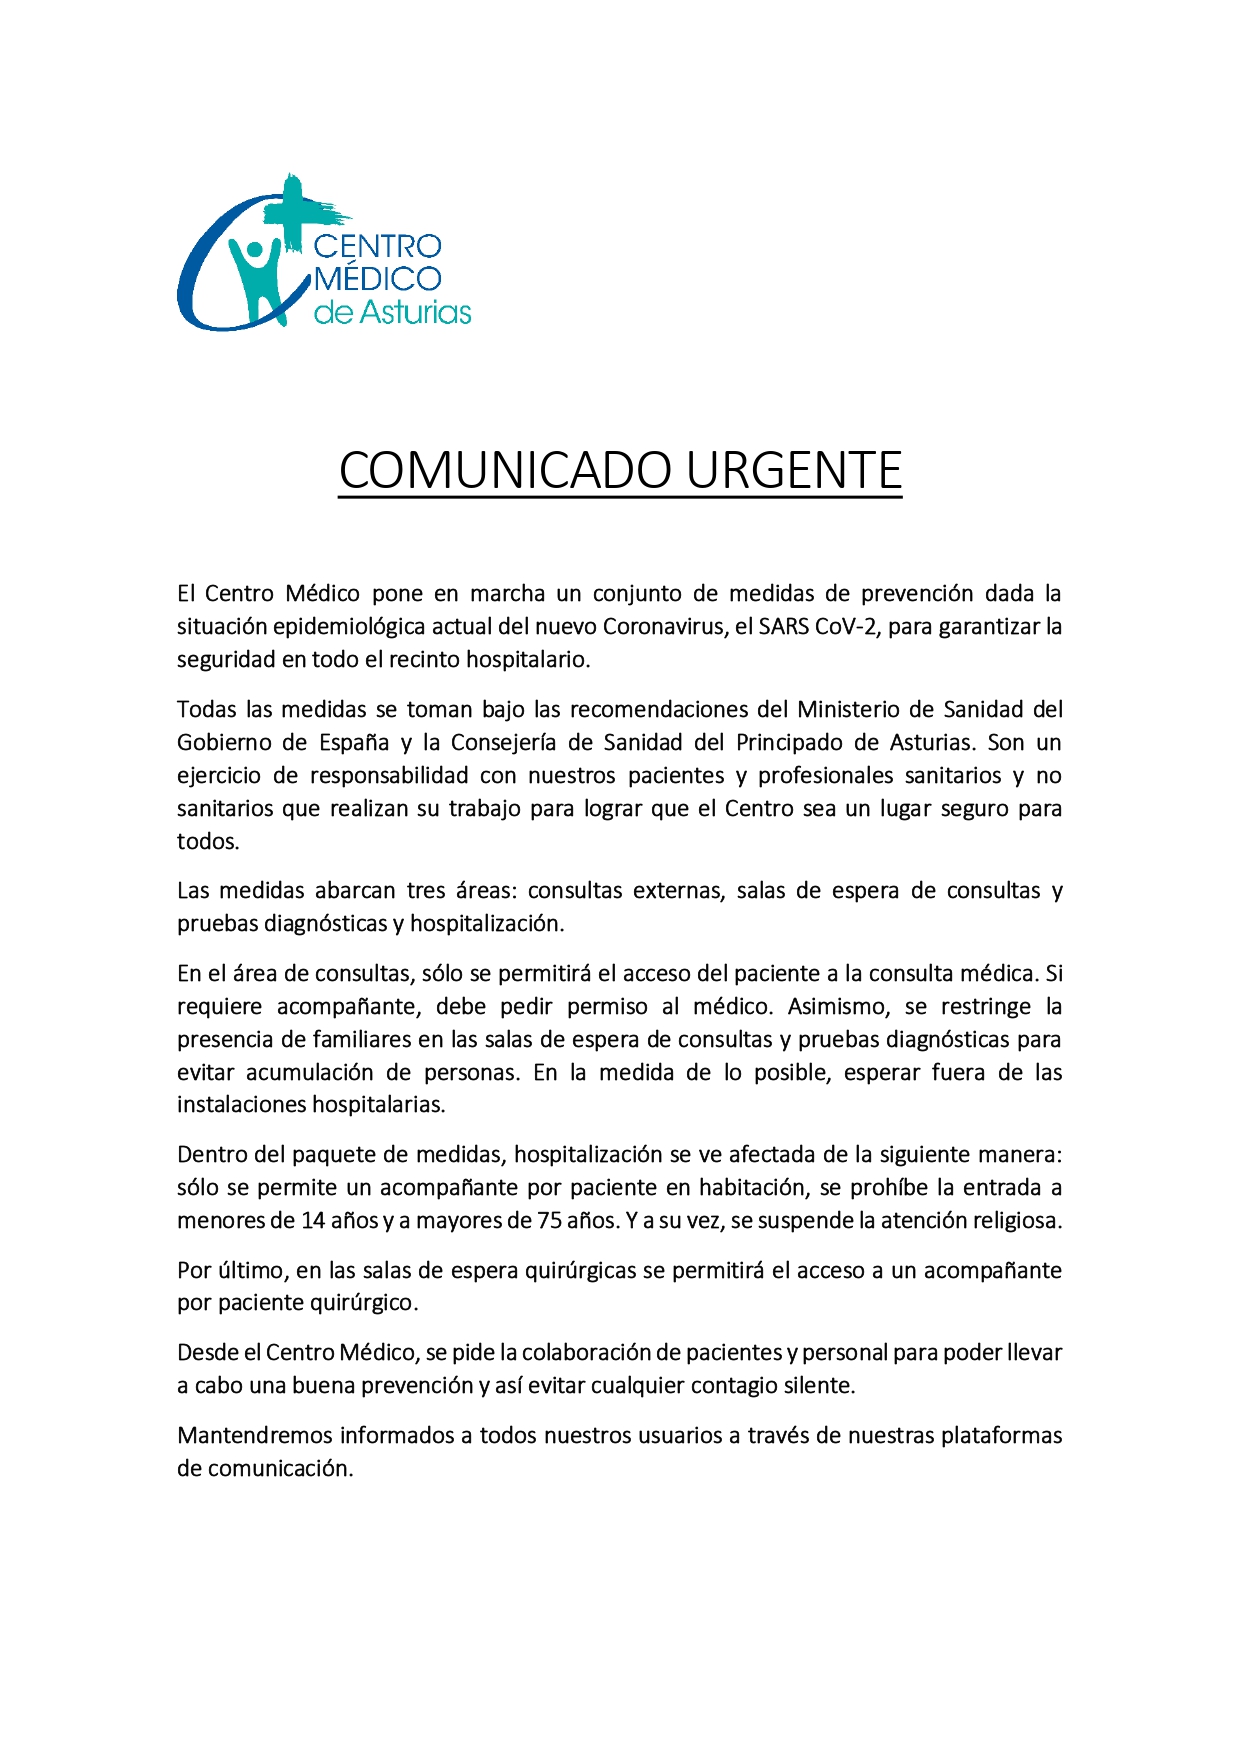 El Centro Mdico de Asturias toma medidas para garantizar la seguridad en todo el recinto hospitalario